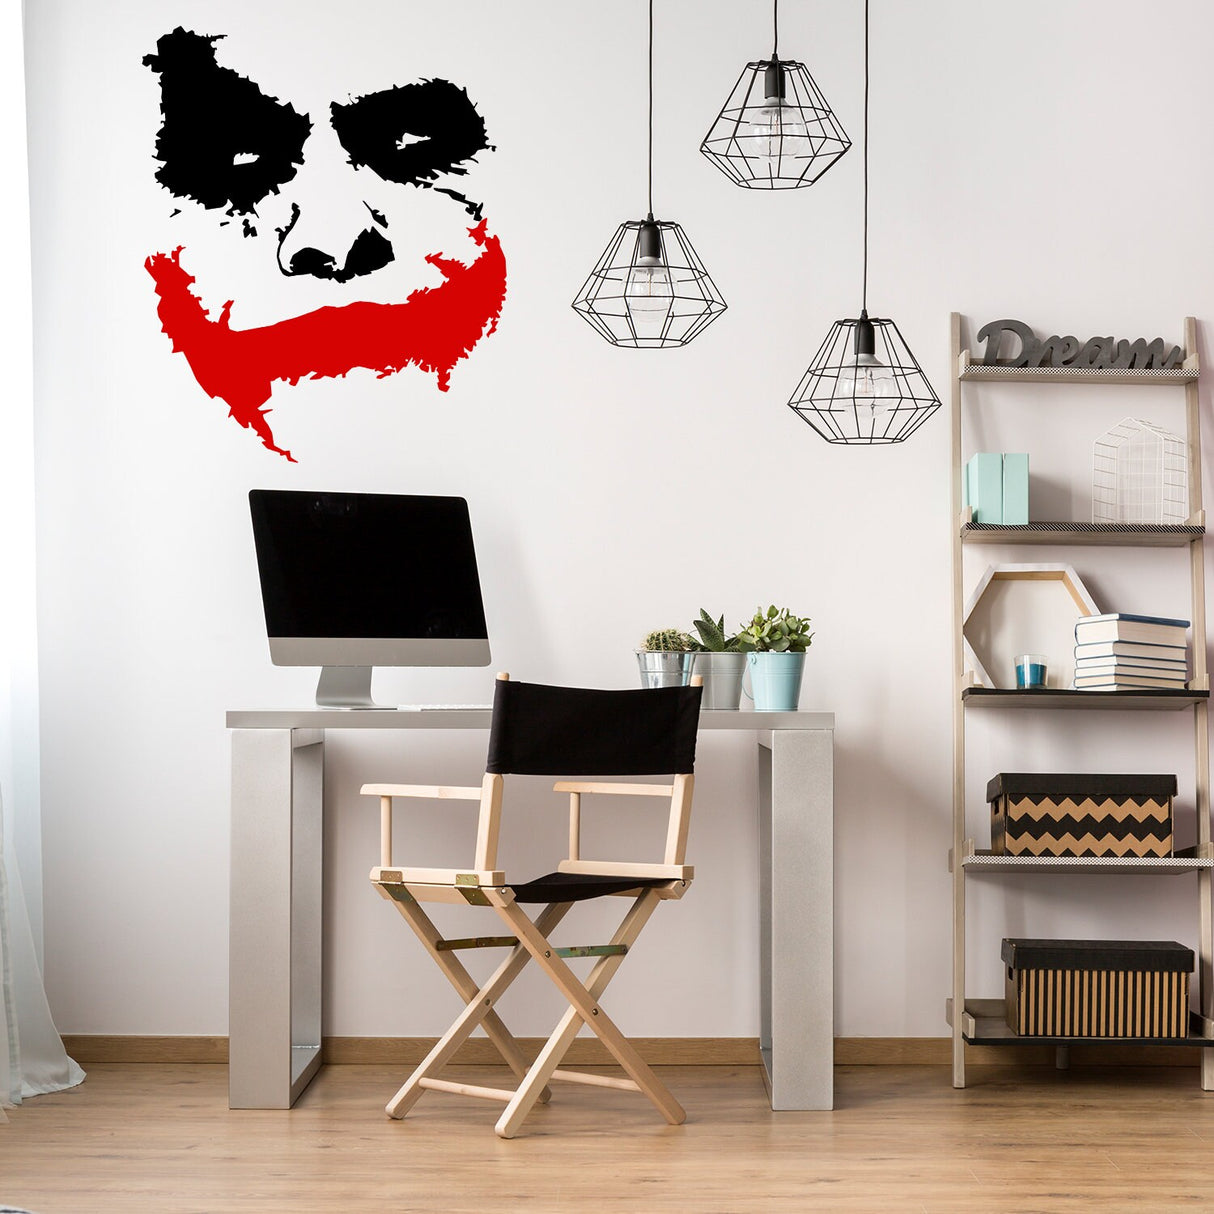 50% OFF - Joker Wall Sticker - Black Vinyl Clown Face Art Decal - Ideal for Kids & Teens - 24" Waterproof Villain Mural